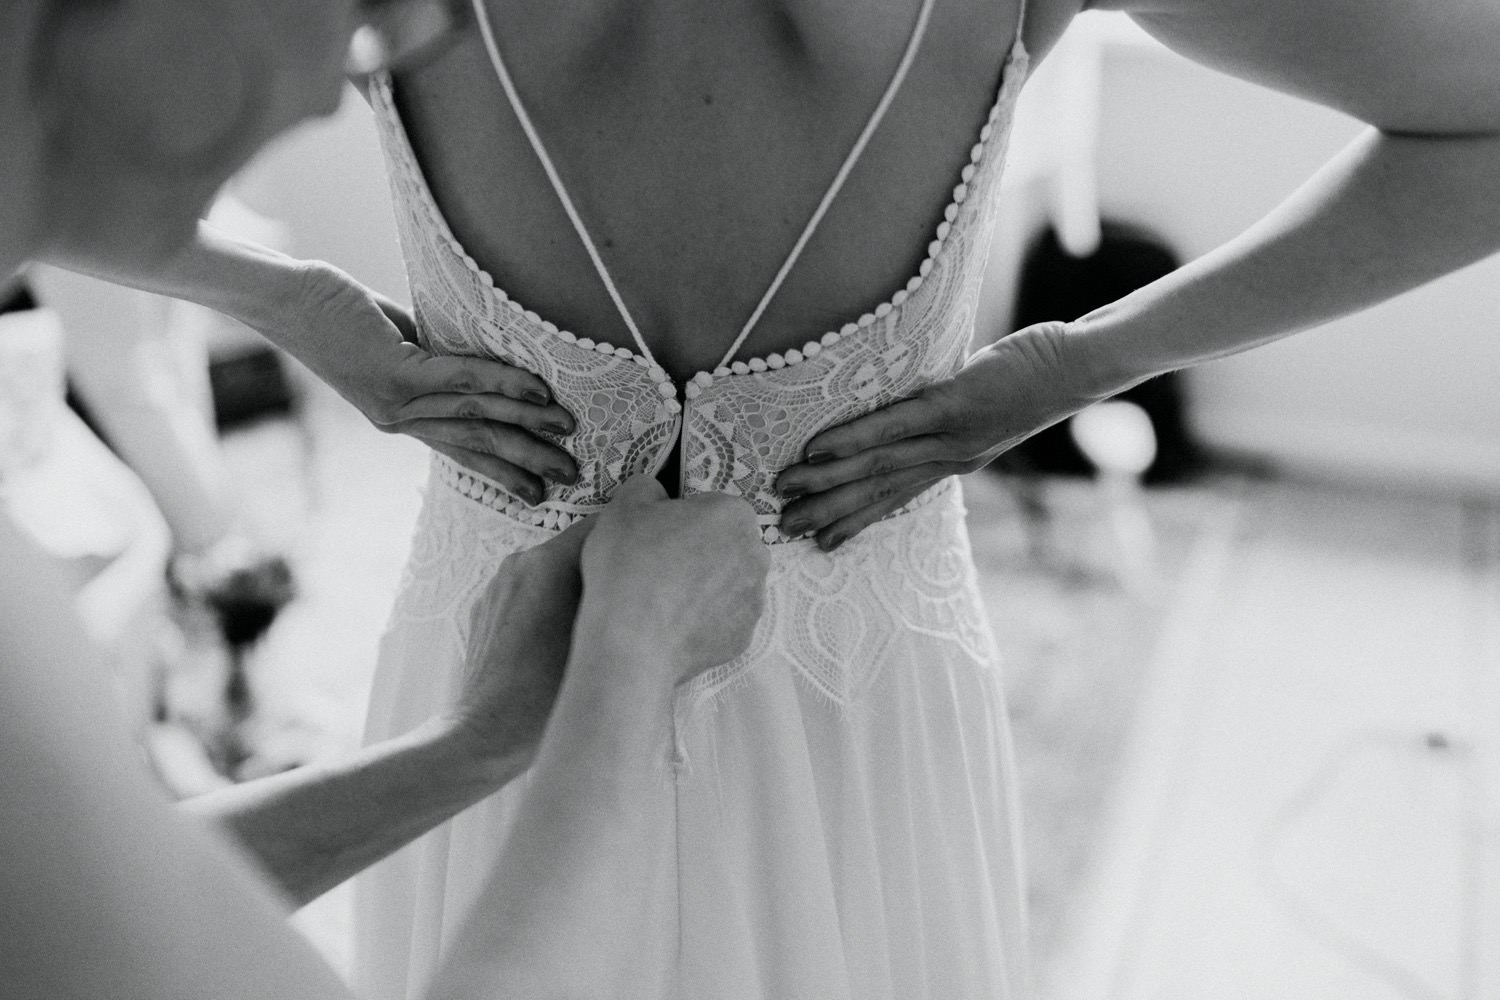 Die Hände der Freundin der Braut helfen der Braut beim Schließen des Reißverschlusses des Brautkleides mit schöner Spitze. In diesem berührenden Moment sieht man nur die liebevollen Gesten der Unterstützung, während sich die Braut auf ihren großen Tag vorbereitet. Der Rücken der Braut strahlt Eleganz und Vorfreude aus, während ihre Freundin behutsam dafür sorgt, dass das Kleid perfekt sitzt.